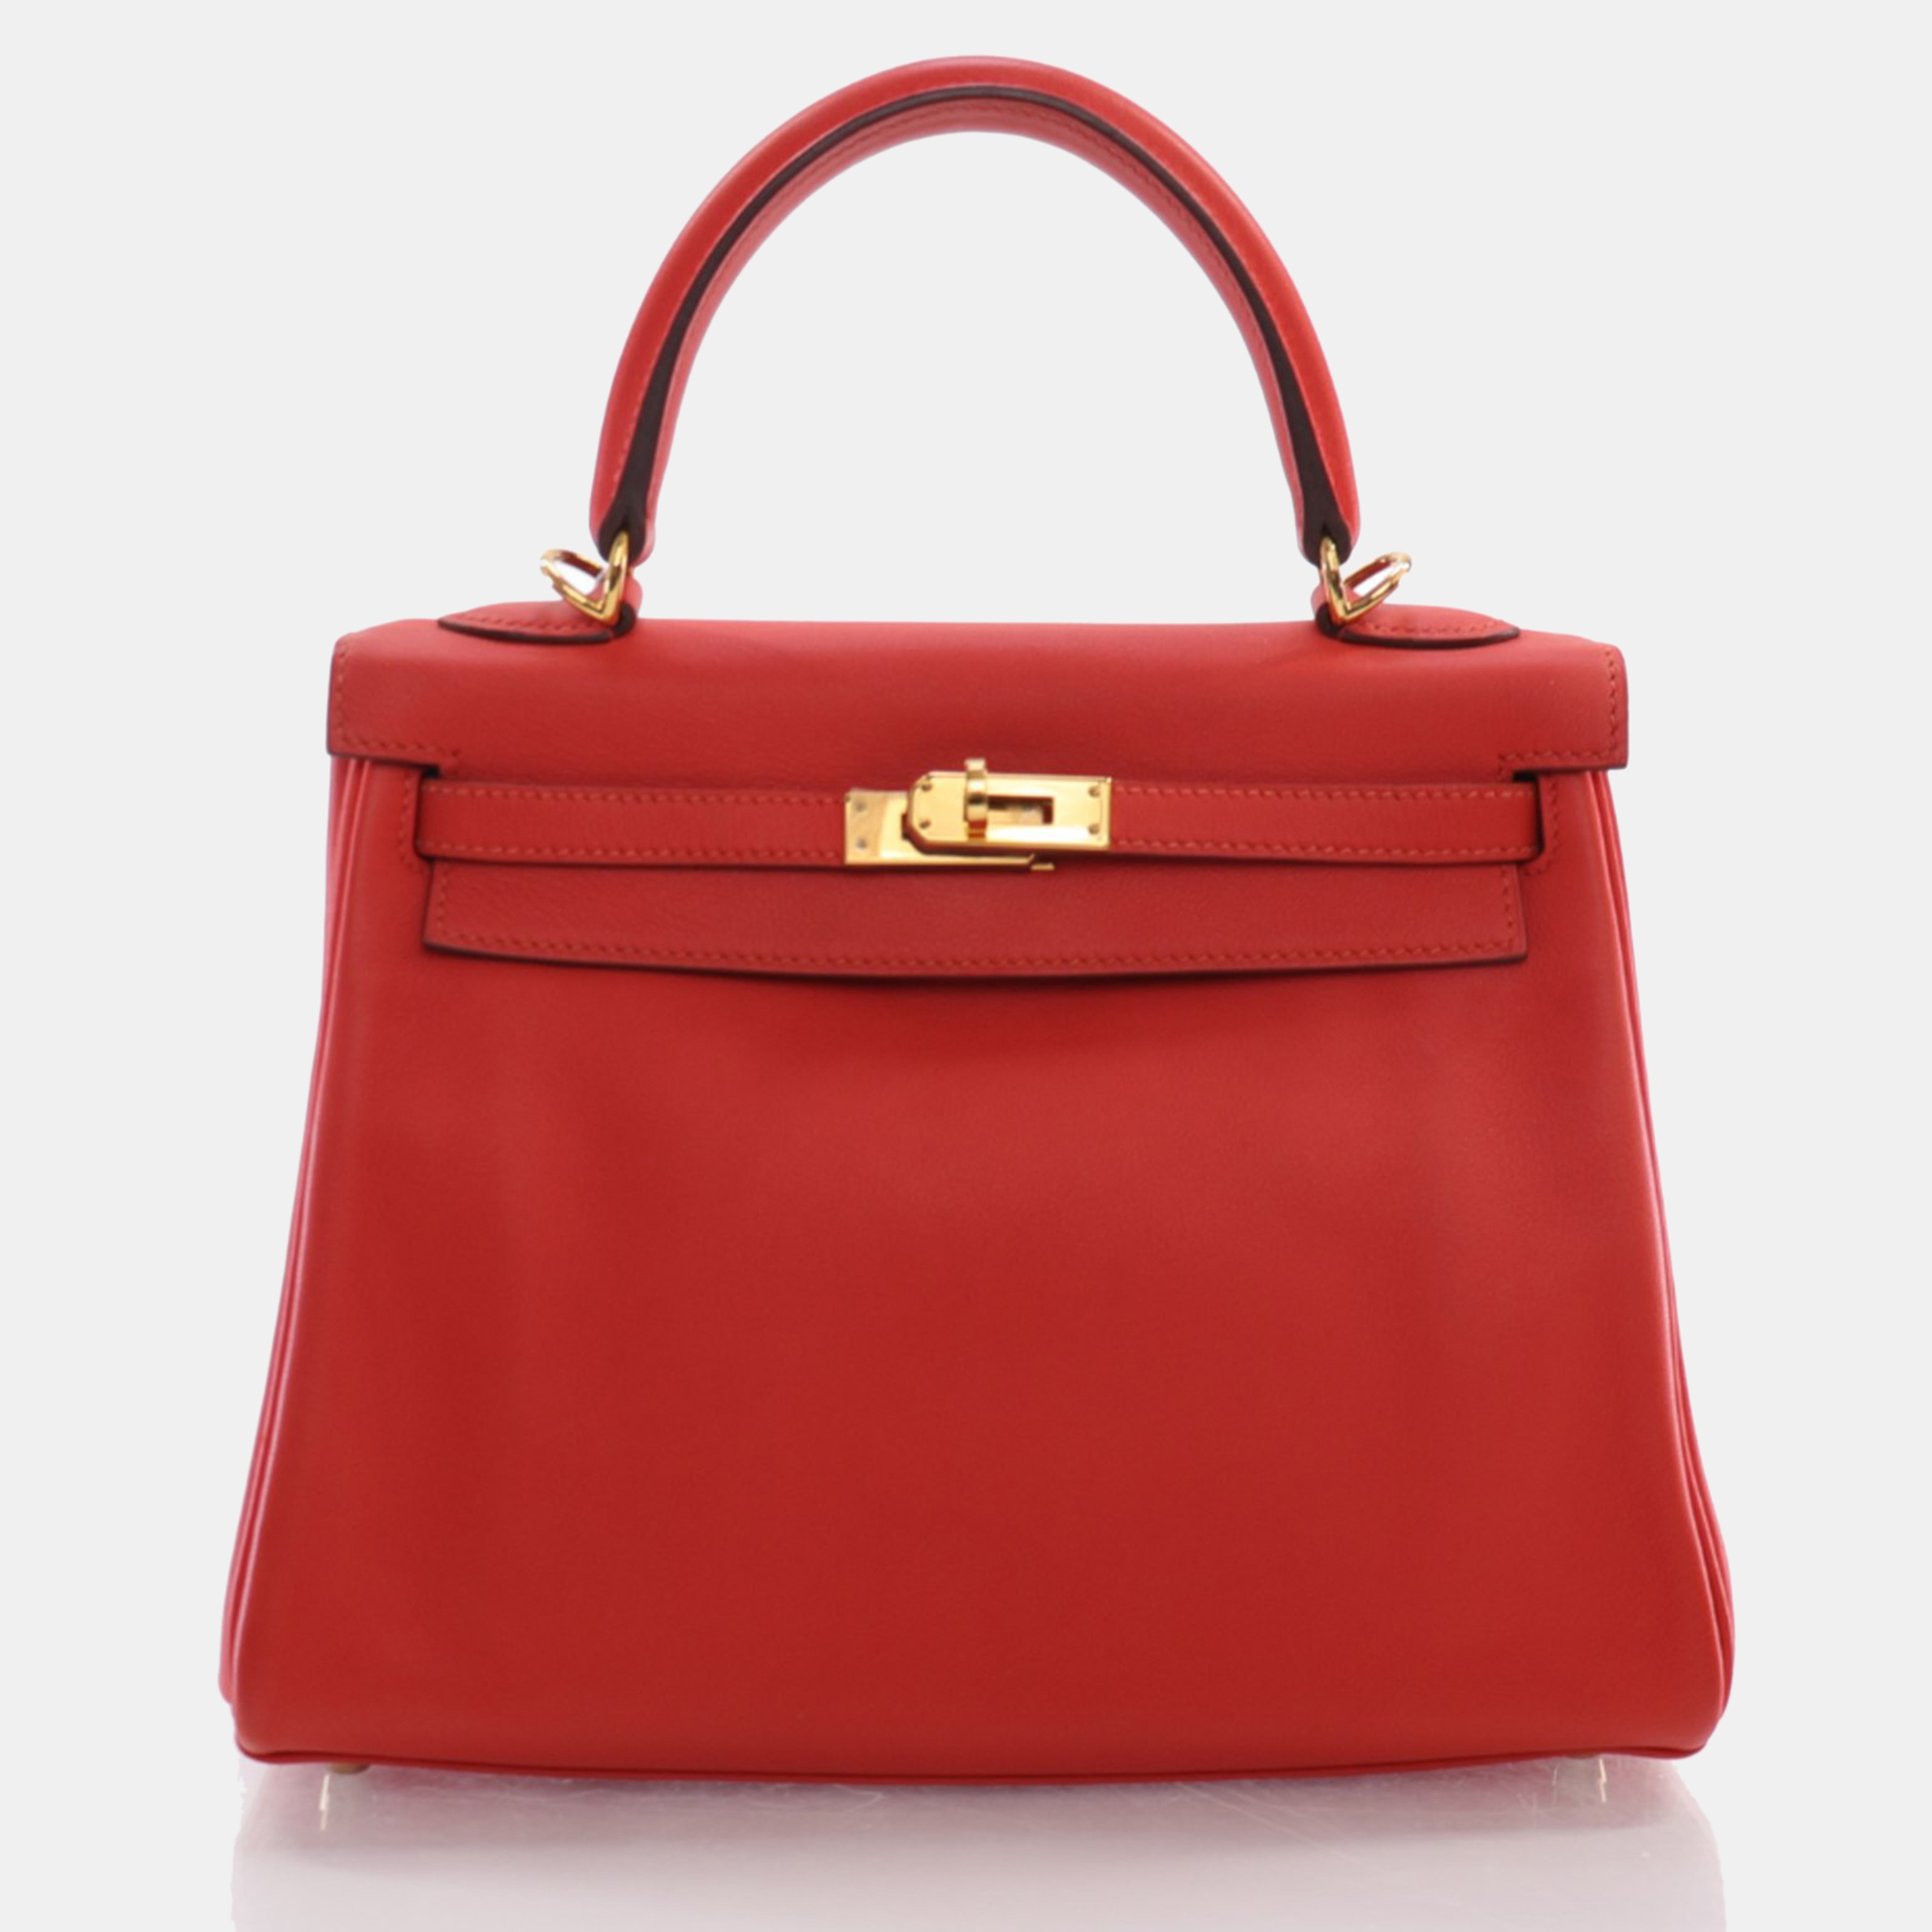 Hermes rouge pivoine swift kelly 25 handbag